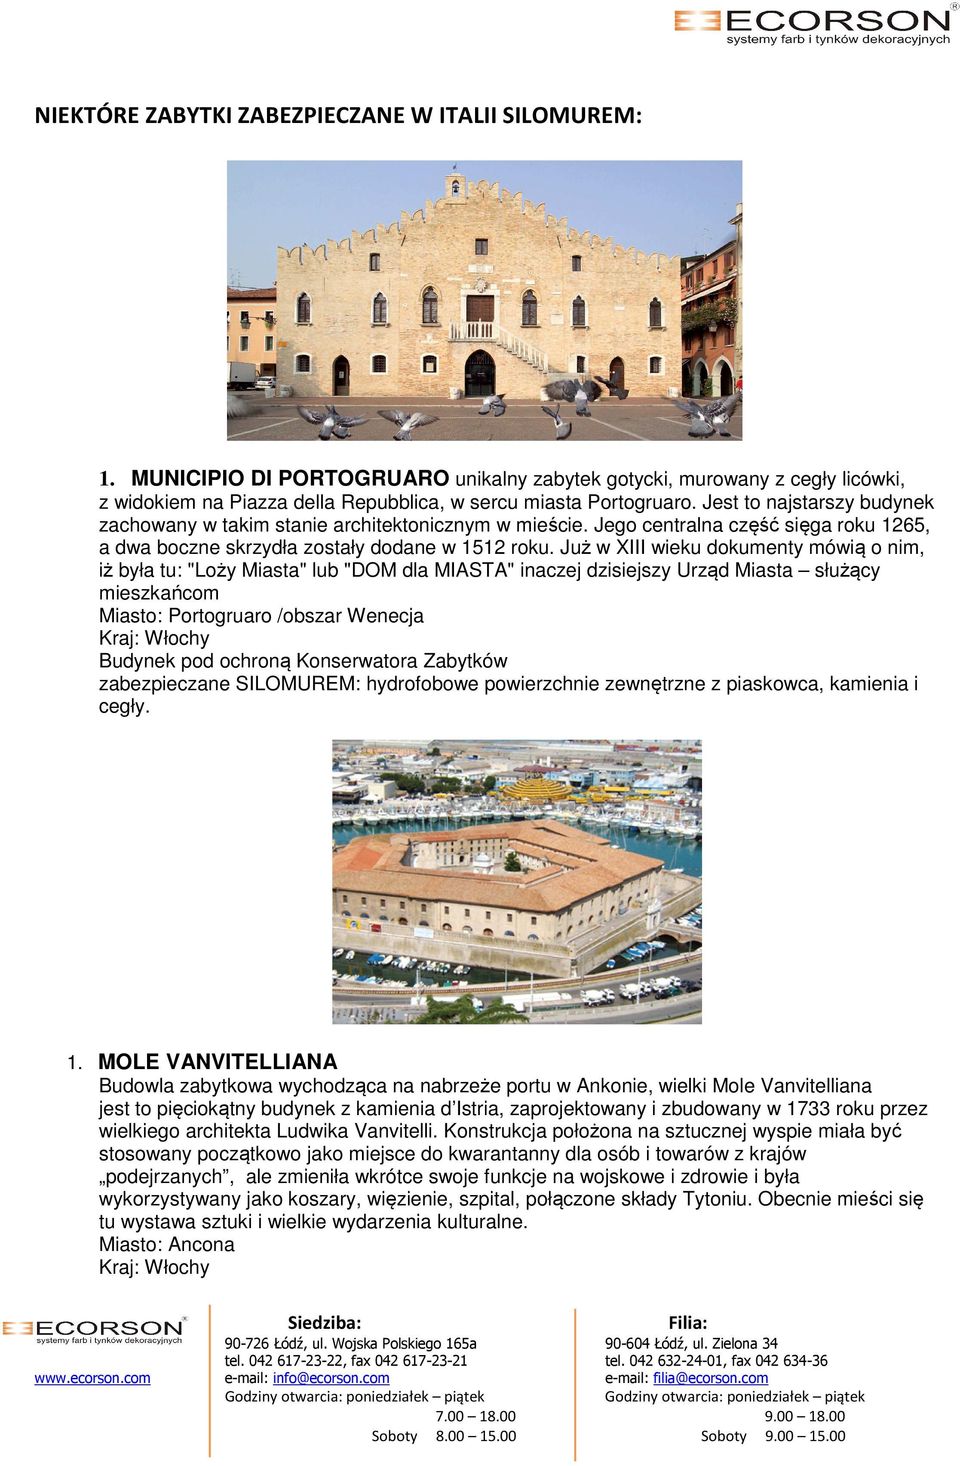 Już w XIII wieku dokumenty mówią o nim, iż była tu: "Loży Miasta" lub "DOM dla MIASTA" inaczej dzisiejszy Urząd Miasta służący mieszkańcom Miasto: Portogruaro /obszar Wenecja zabezpieczane SILOMUREM: